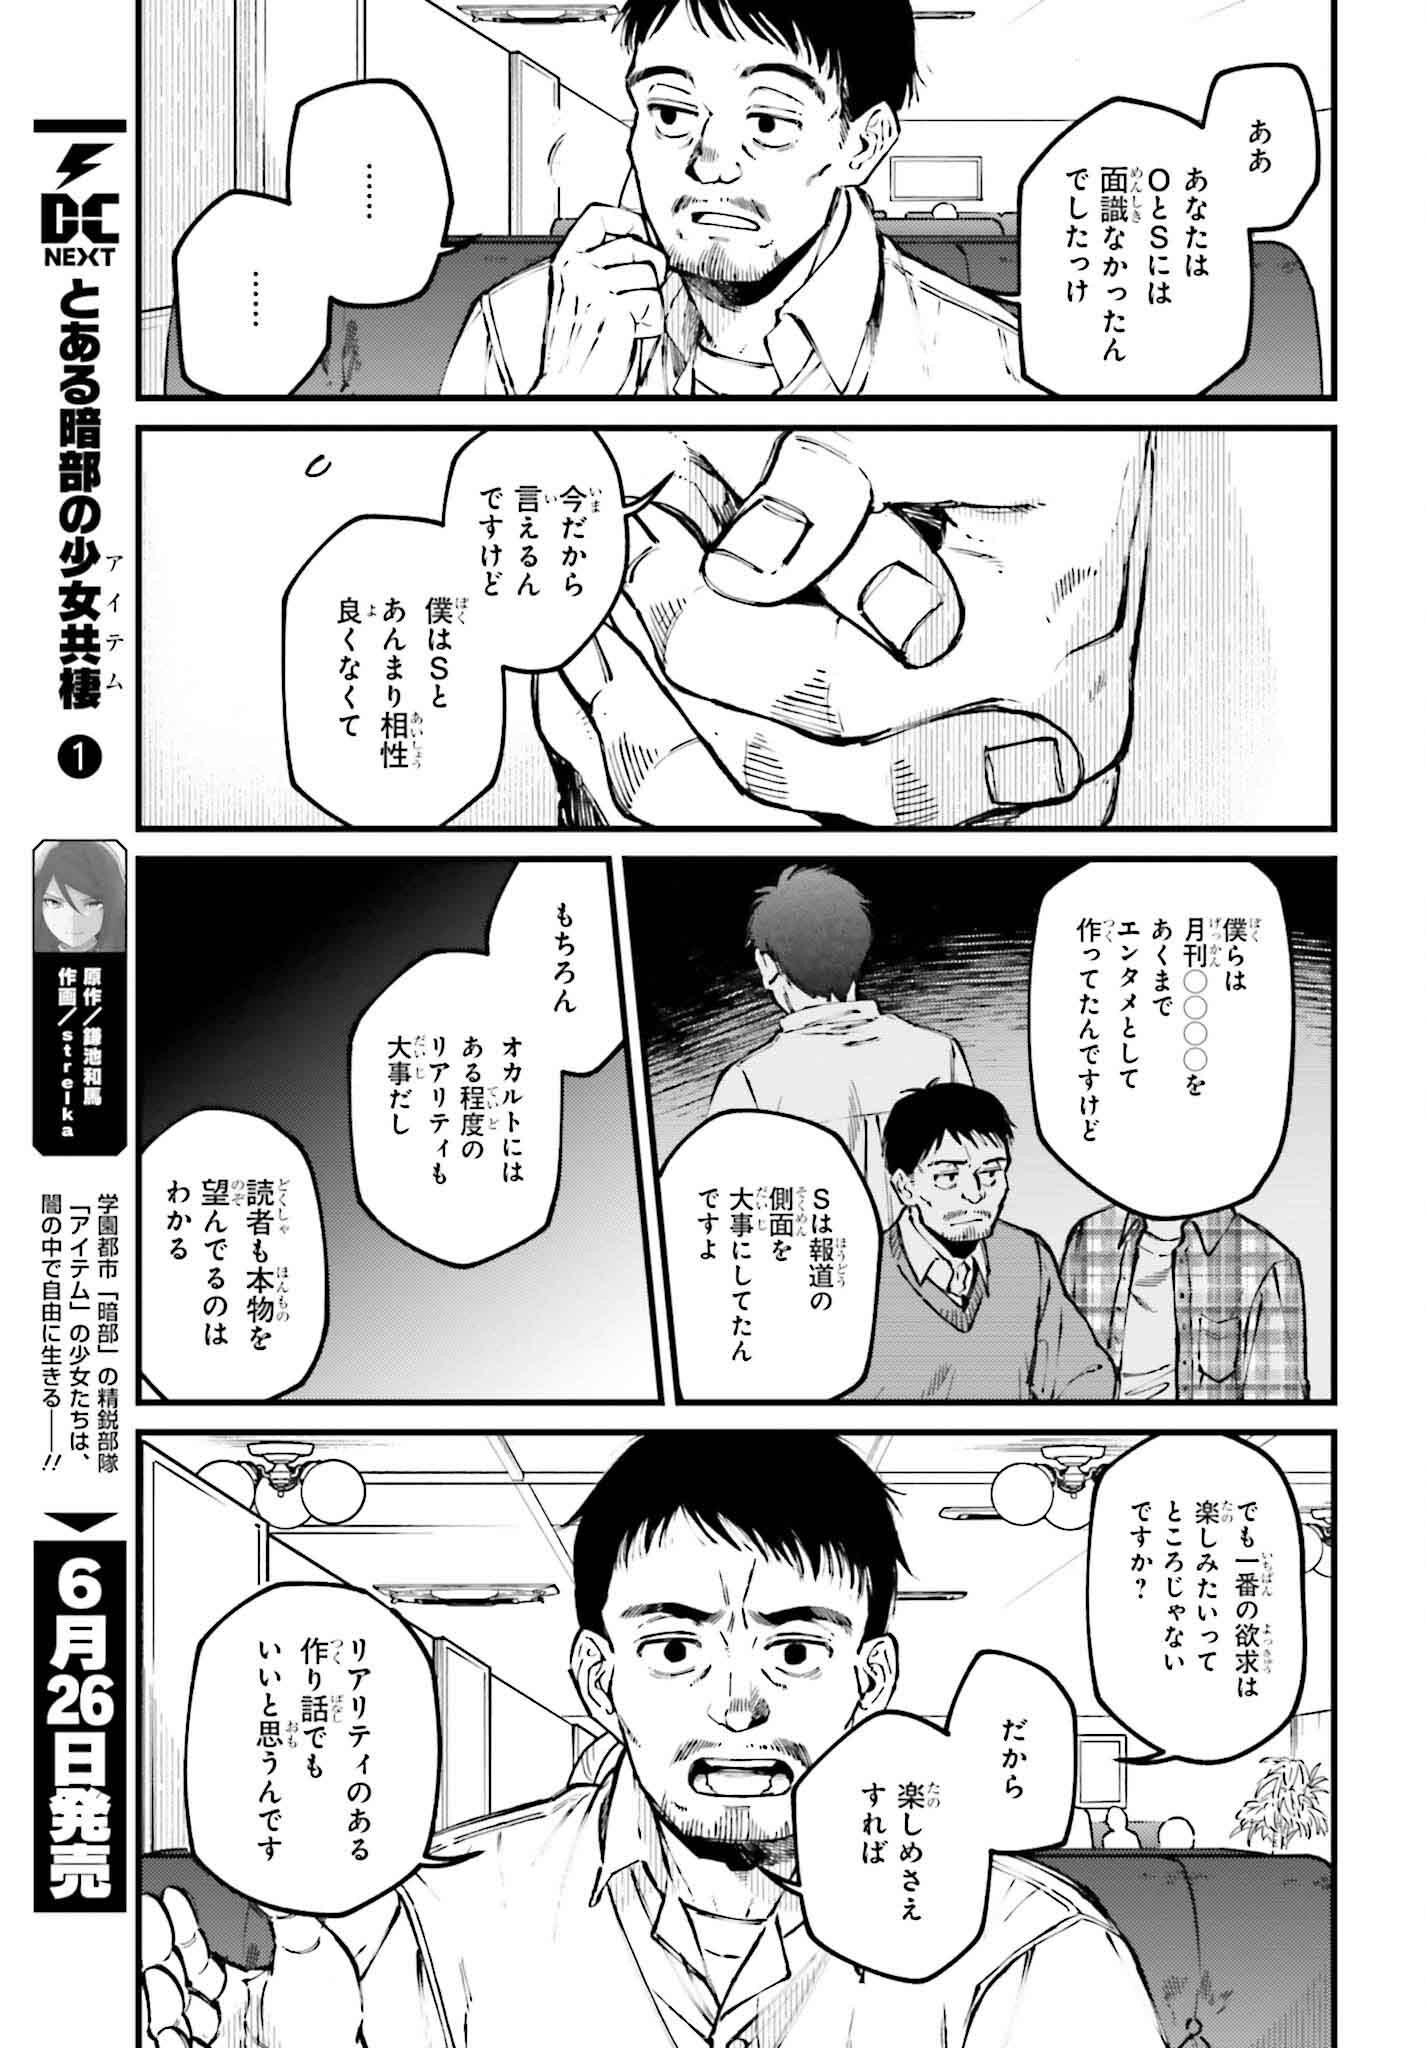 Kinki Chihou no Aru Basho ni Tsuite - Chapter 7 - Page 3